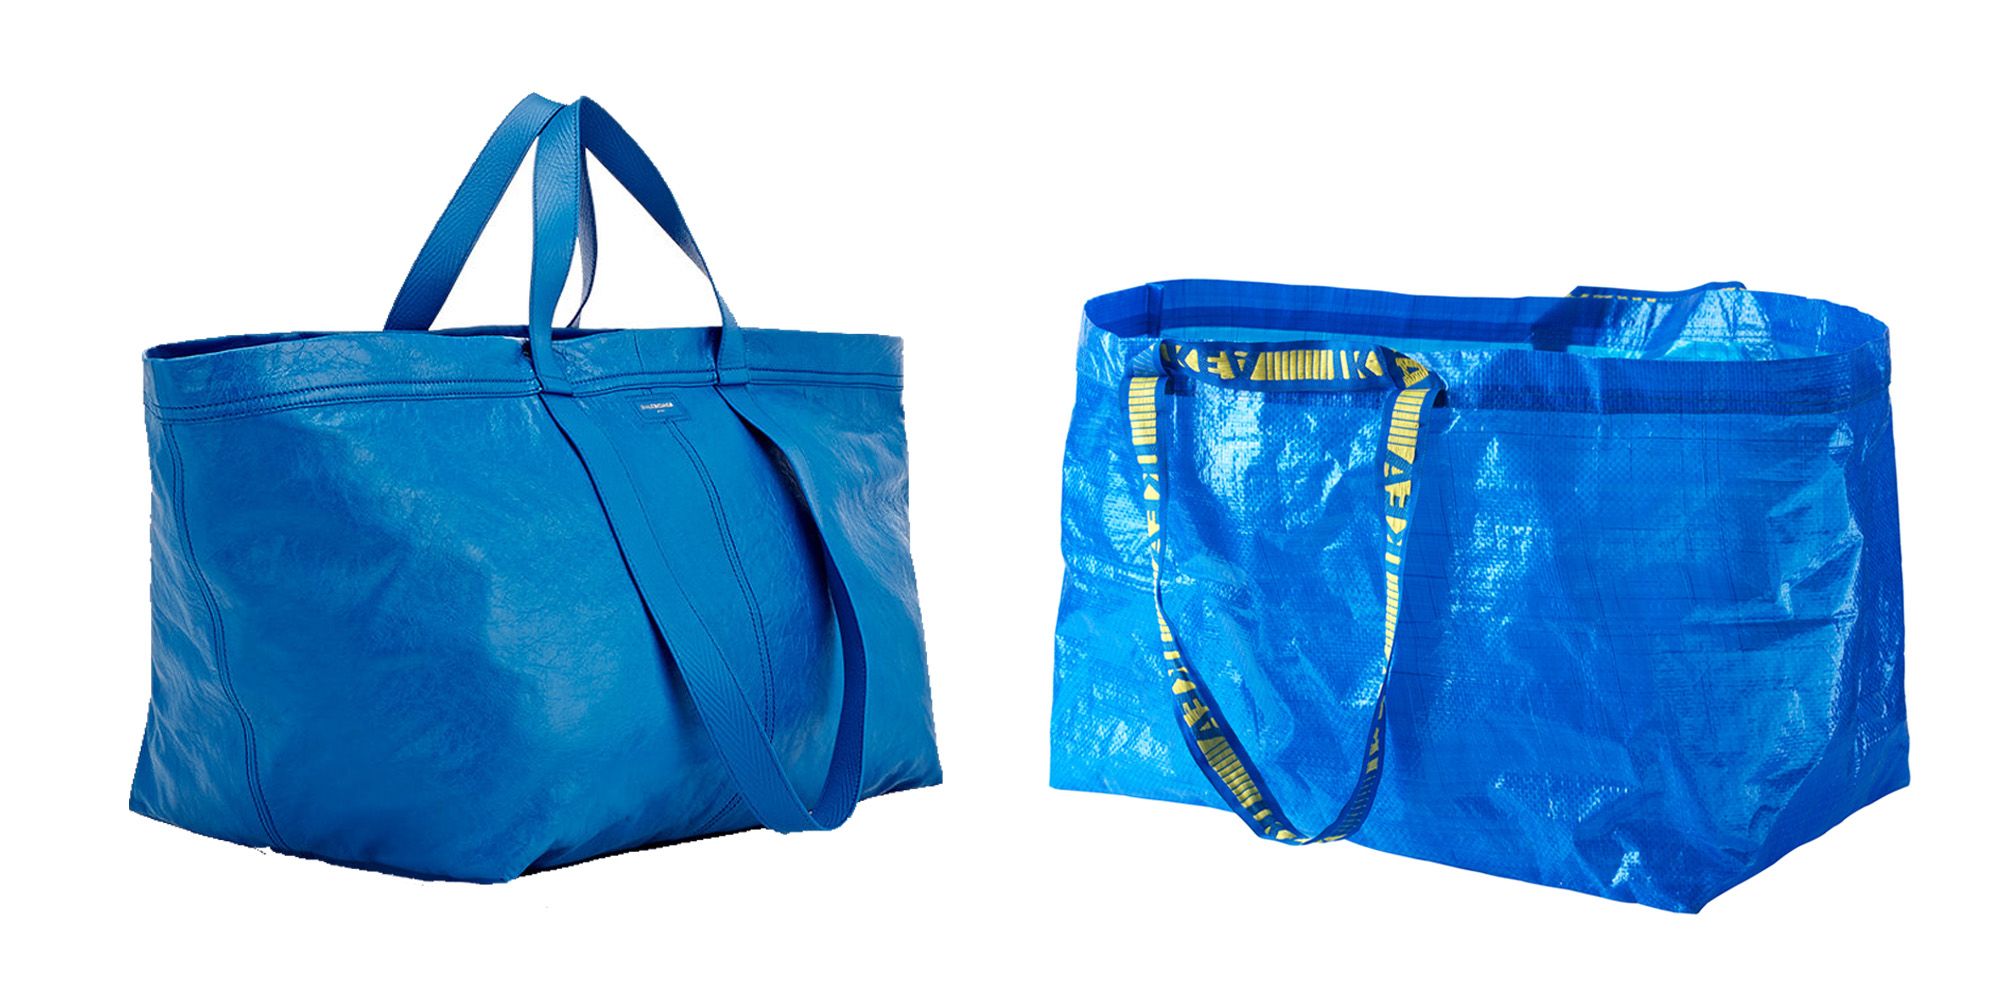 Ikea Blue Bag 